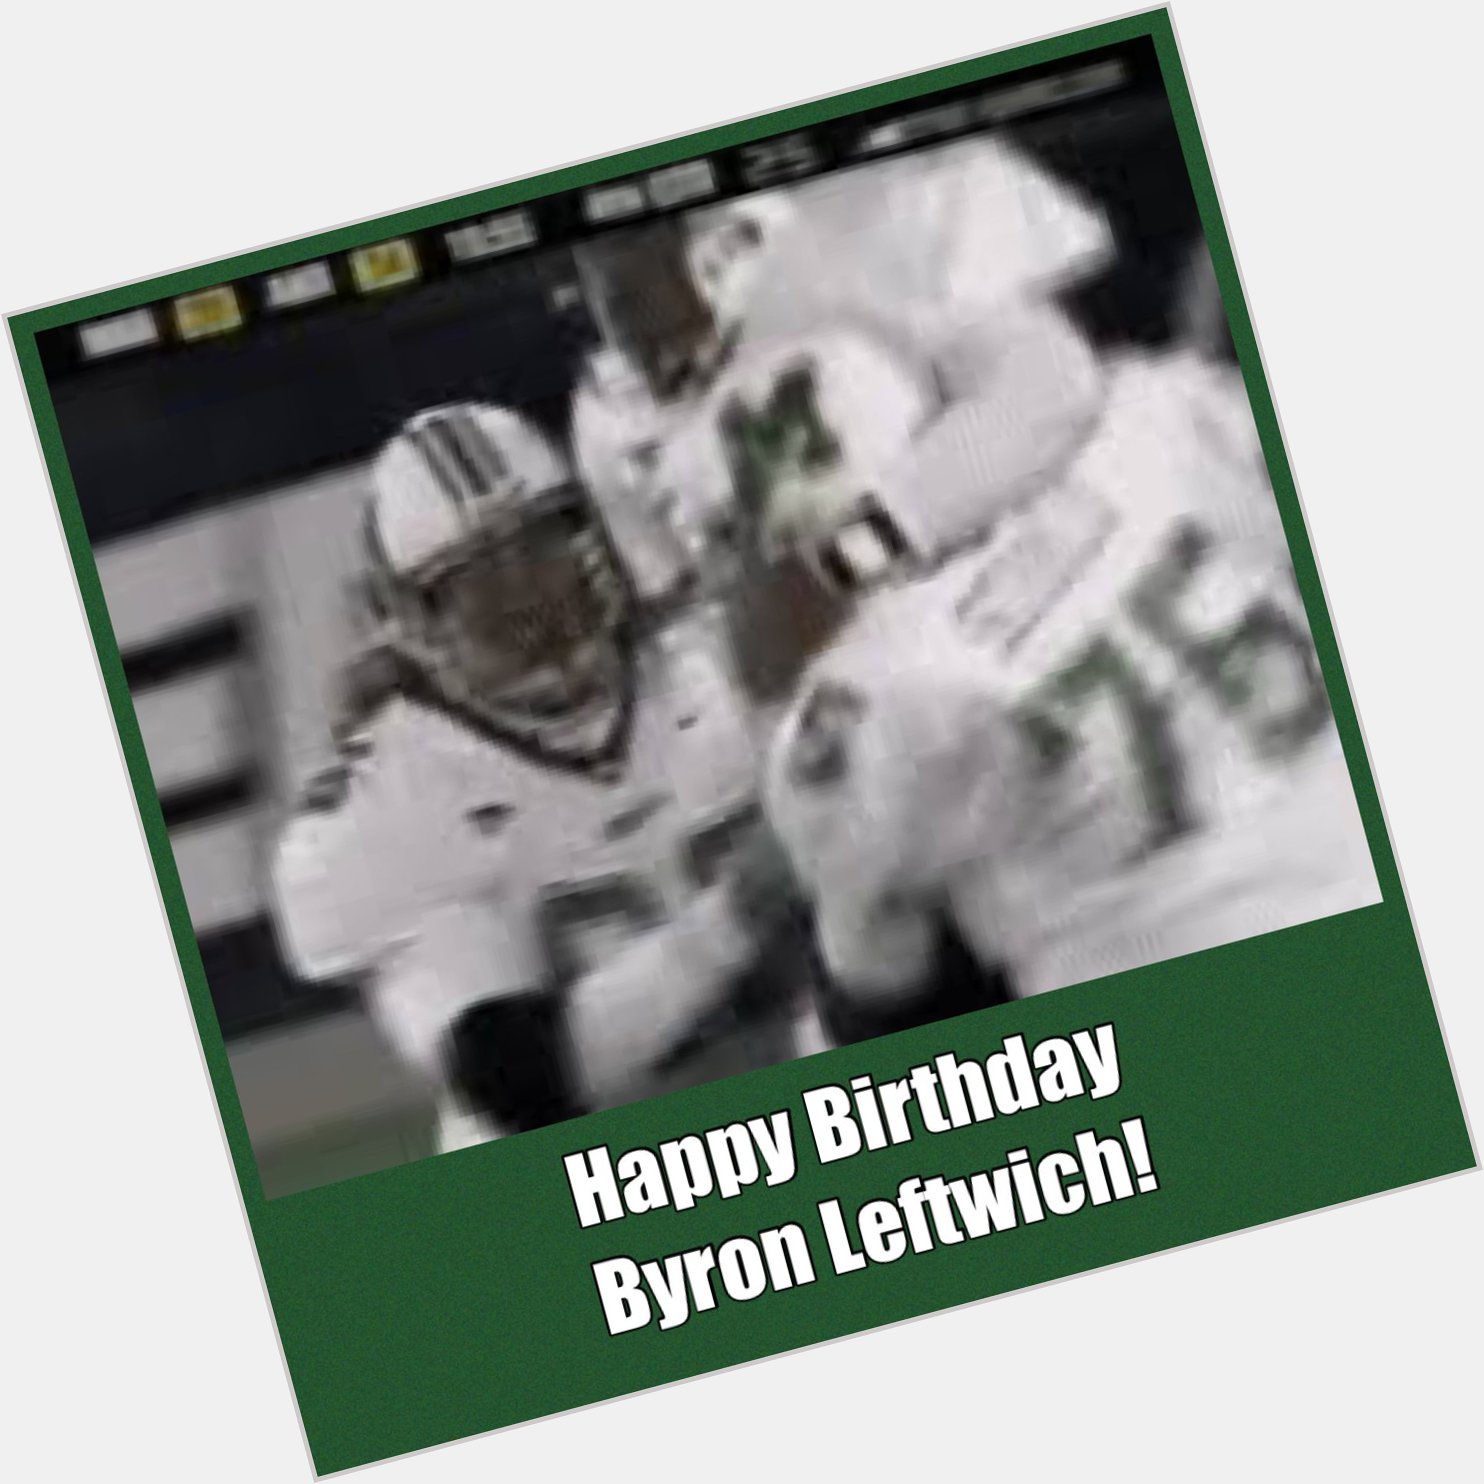 Happy Birthday Byron Leftwich! 